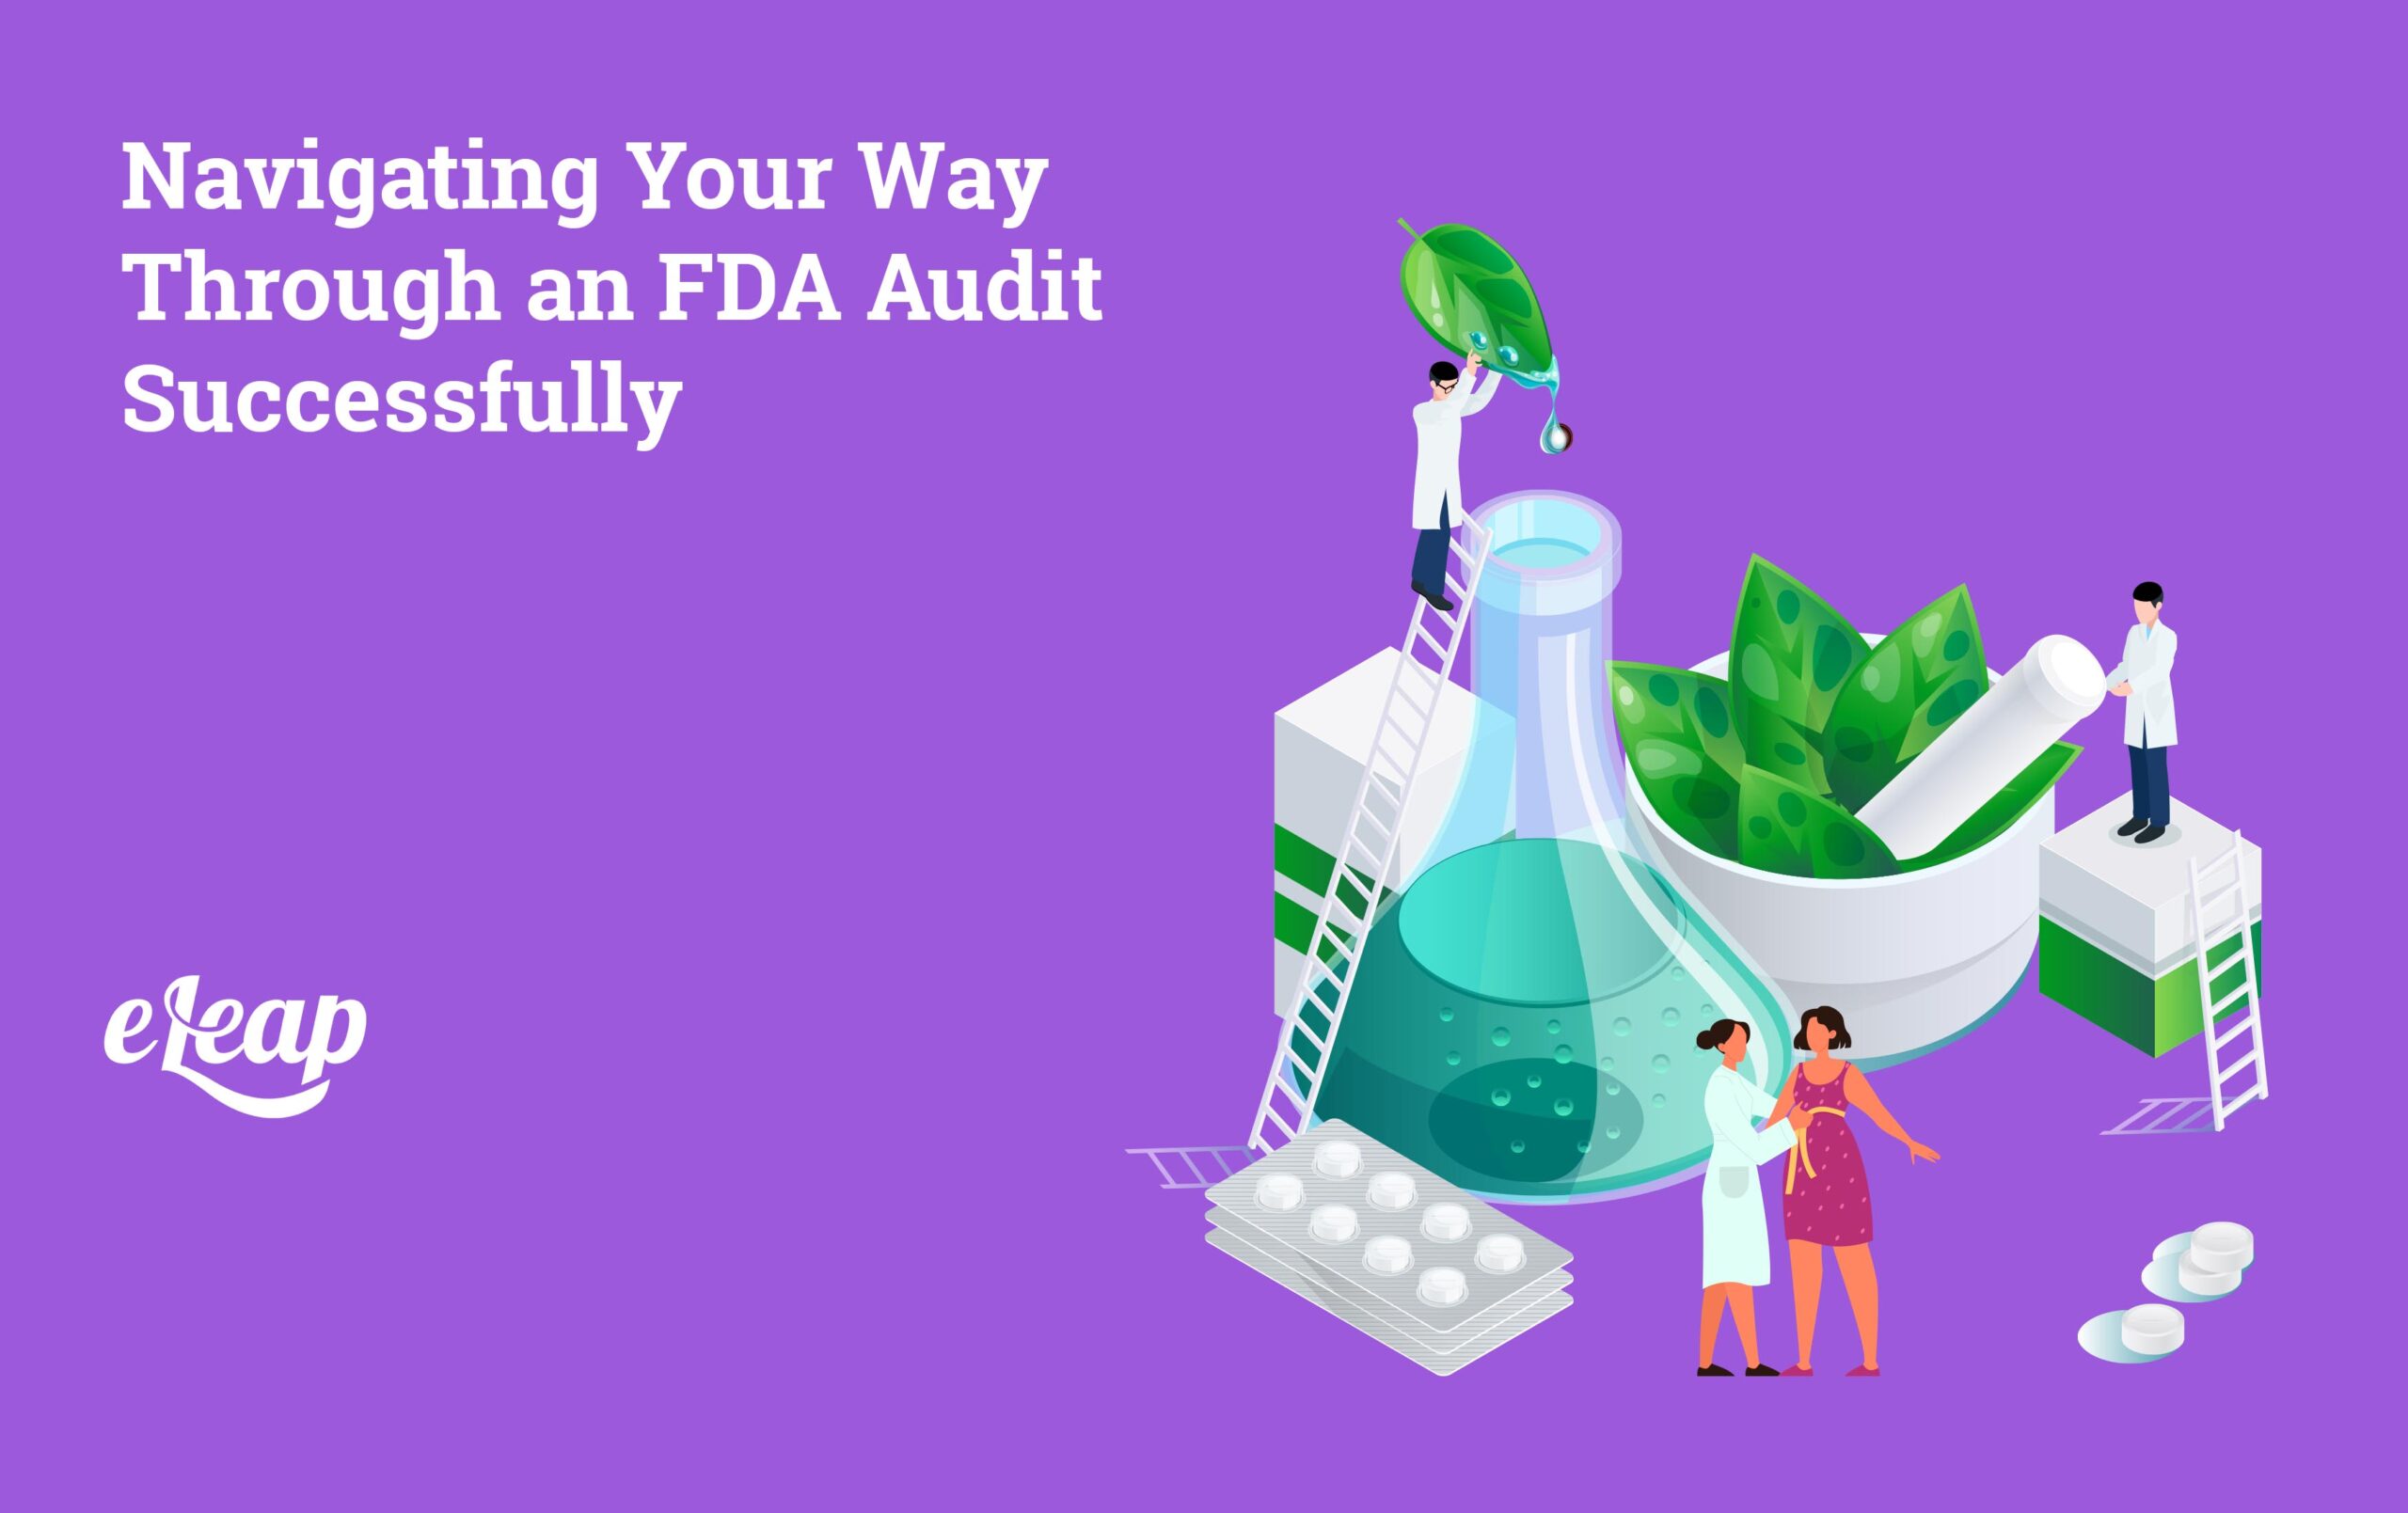 FDA Audit